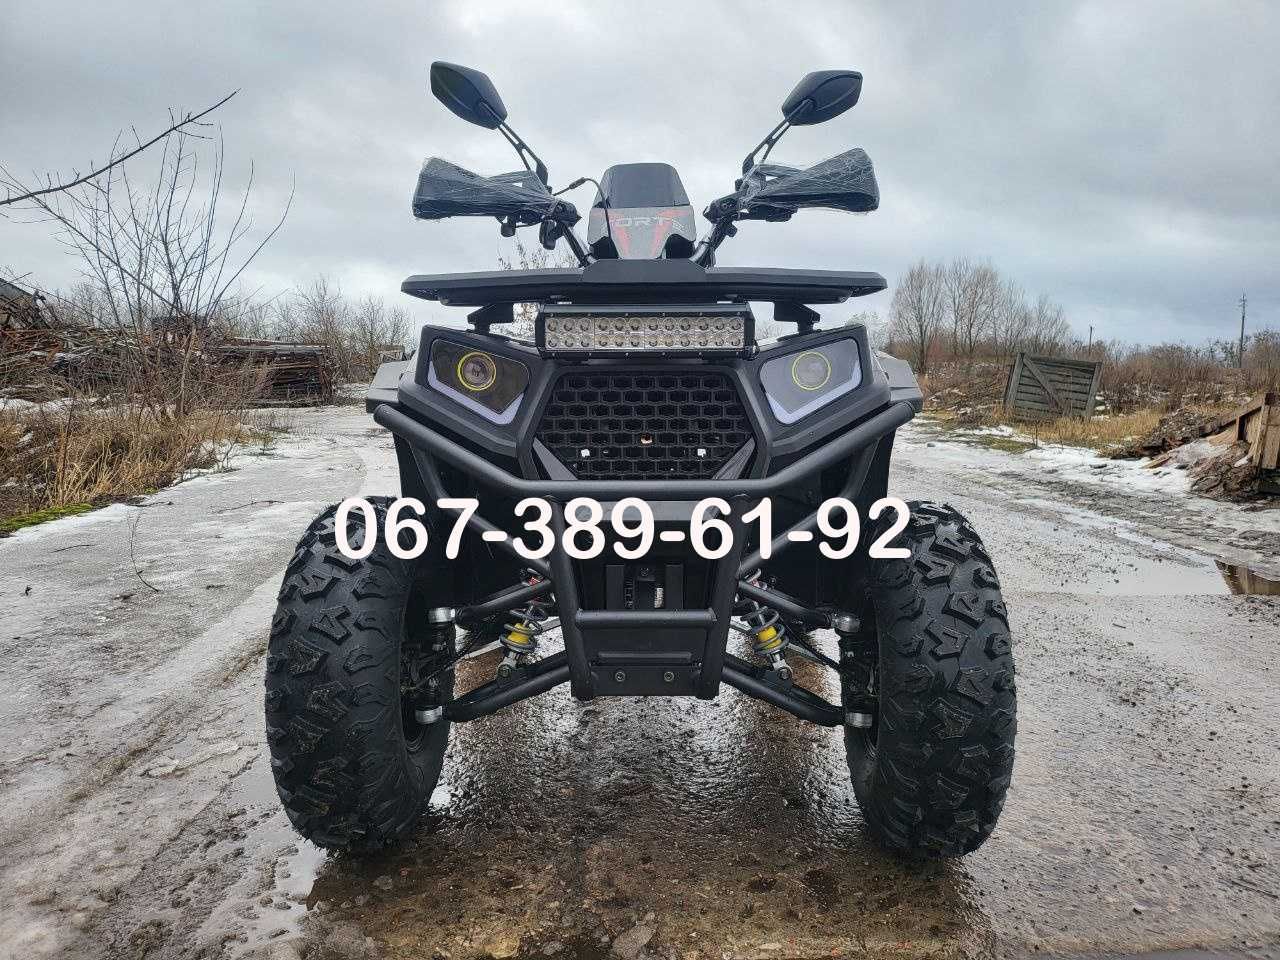 Квадроцикл Forte ATV 200 G PRO 2х4 Доставка додому Лінхай Комман Спарк